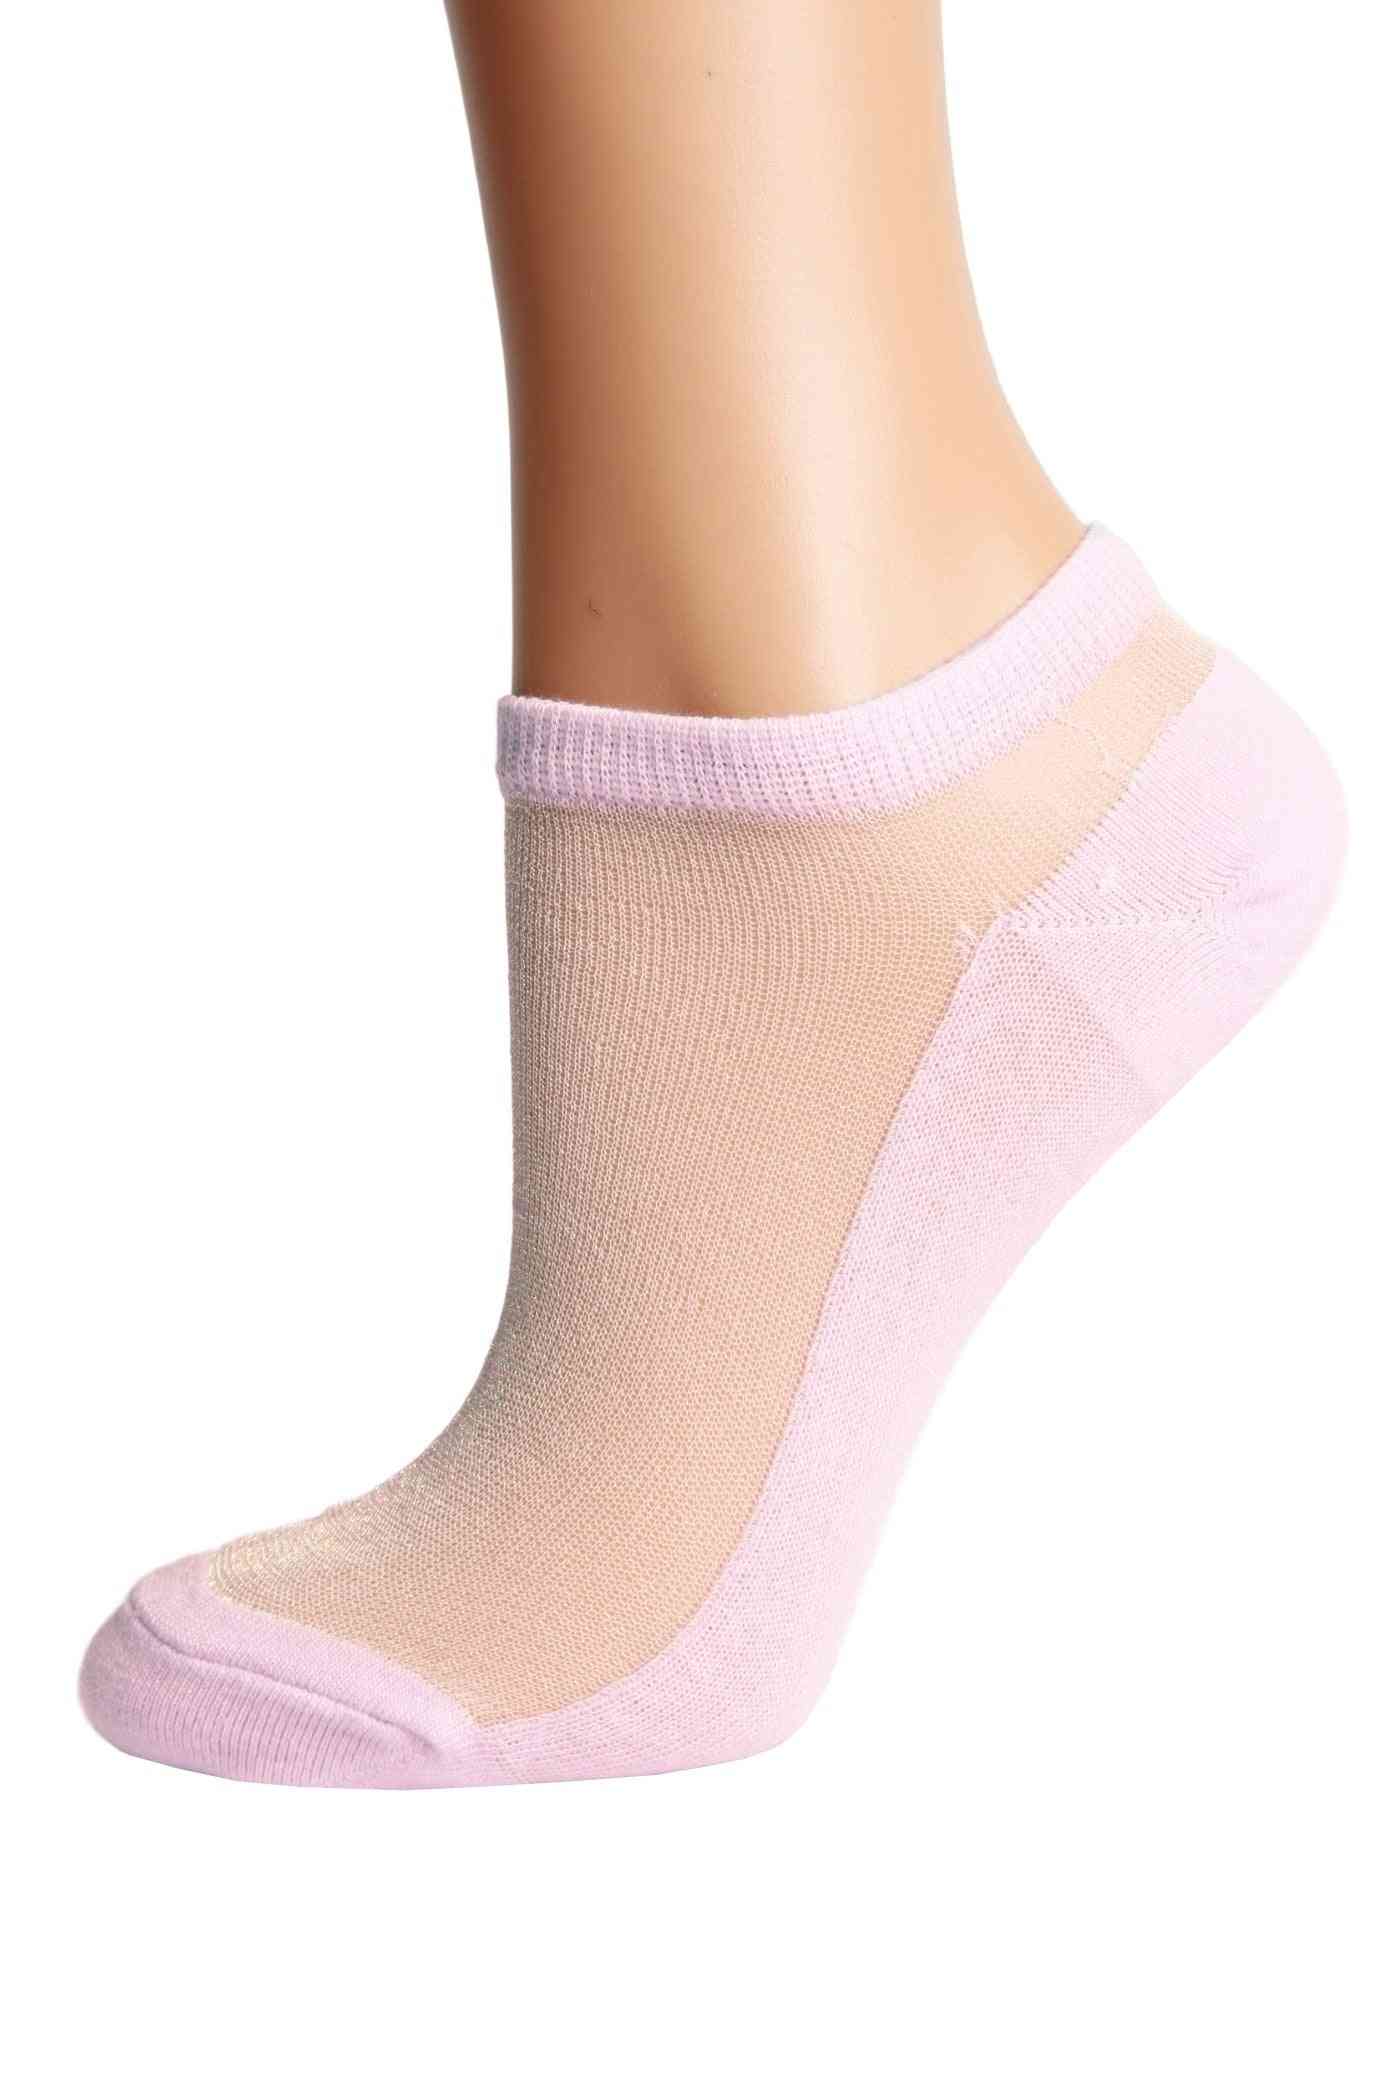 Glittery Socks For Women